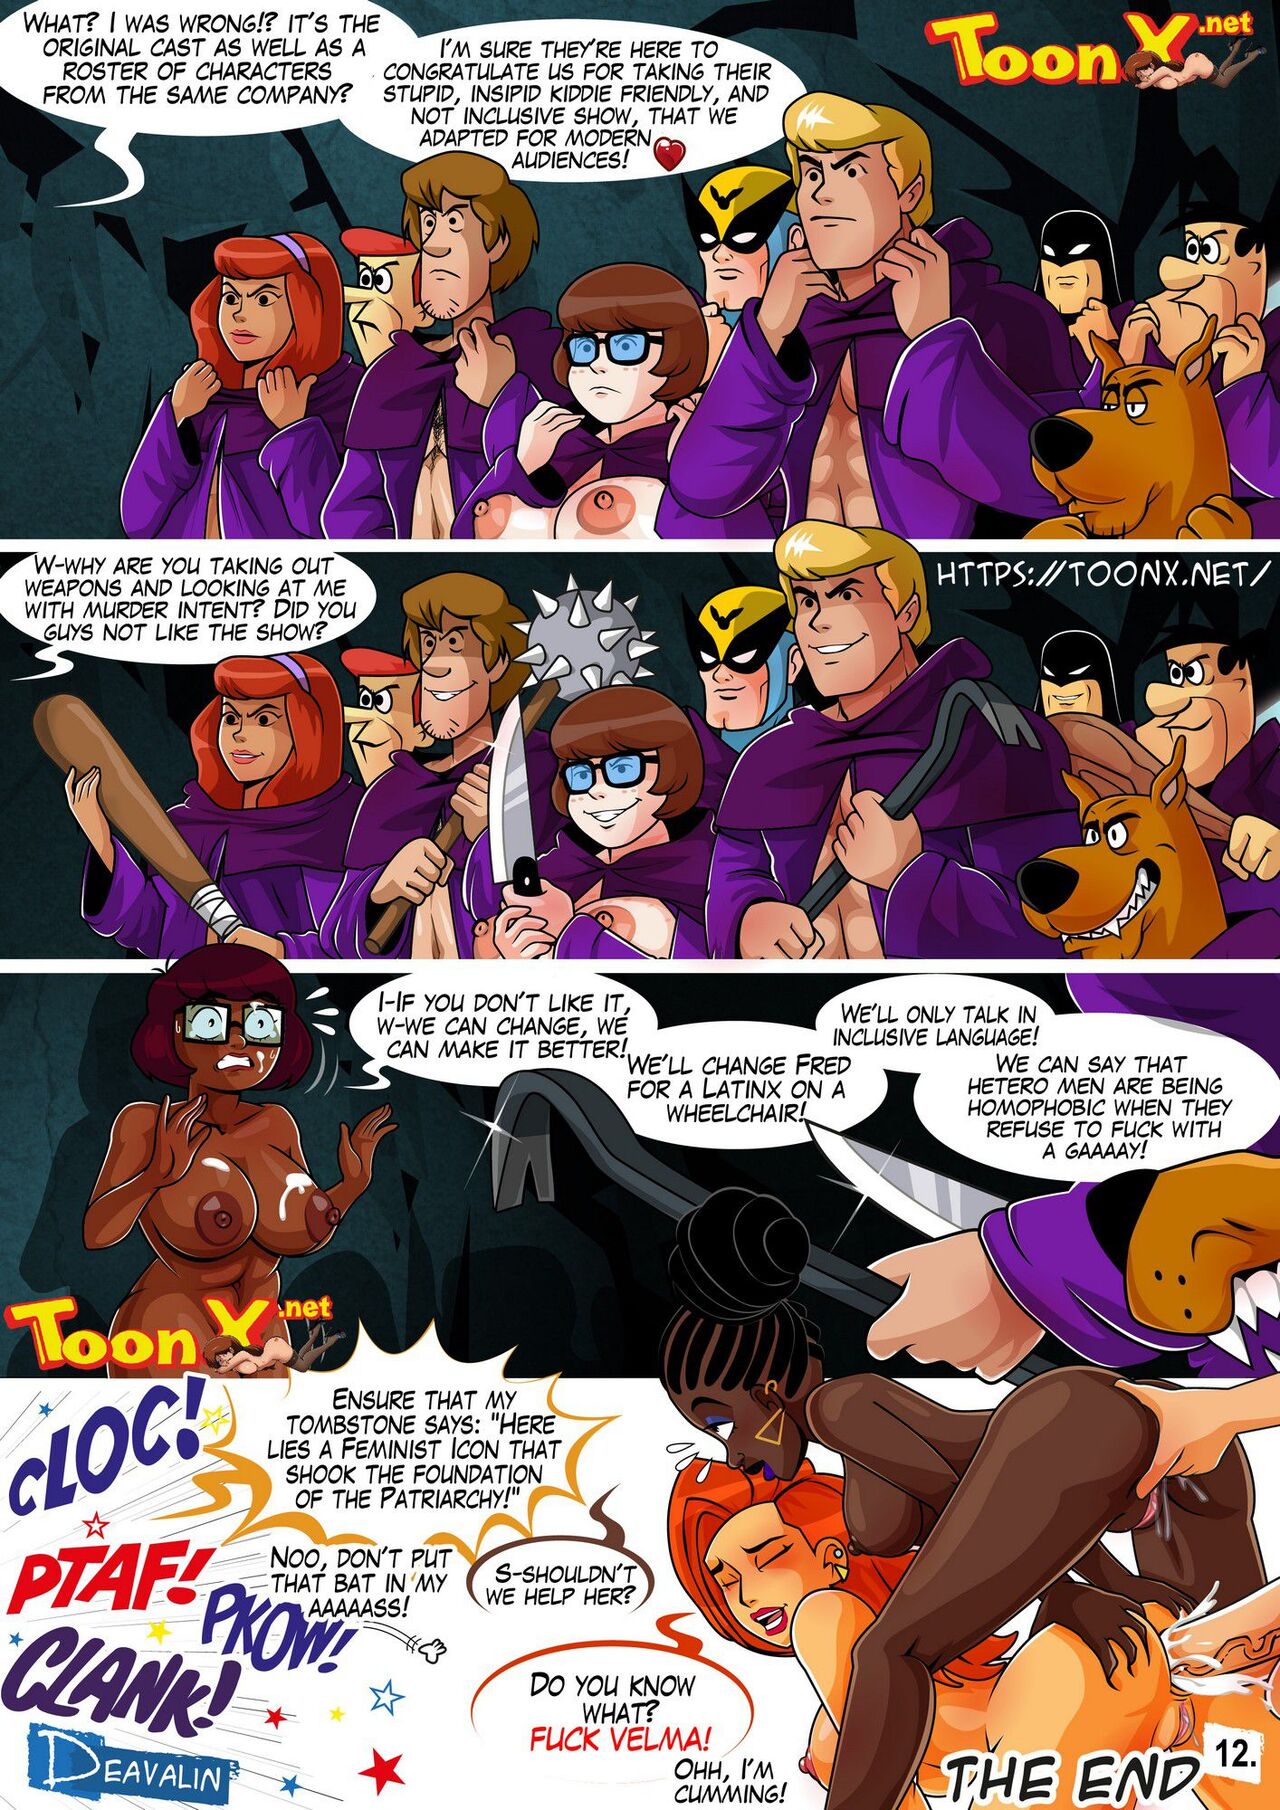 Fuck Velma – Deavalin 12